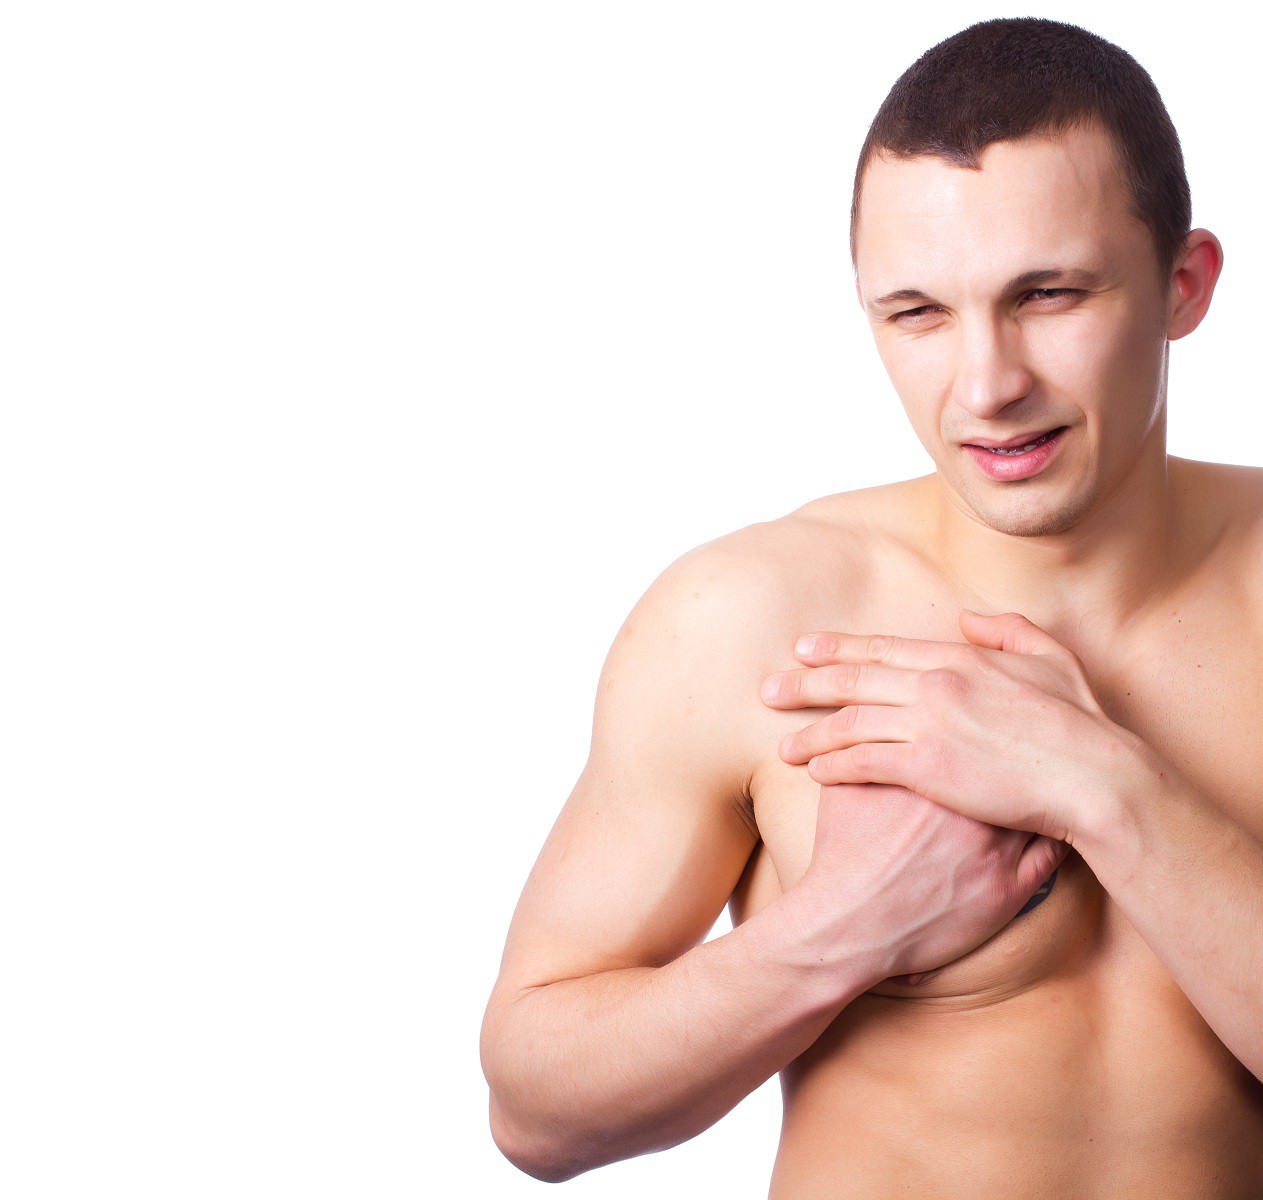 رشد غیر طبیعی عضلات قلب، شایع اما کمتر شناخته شده